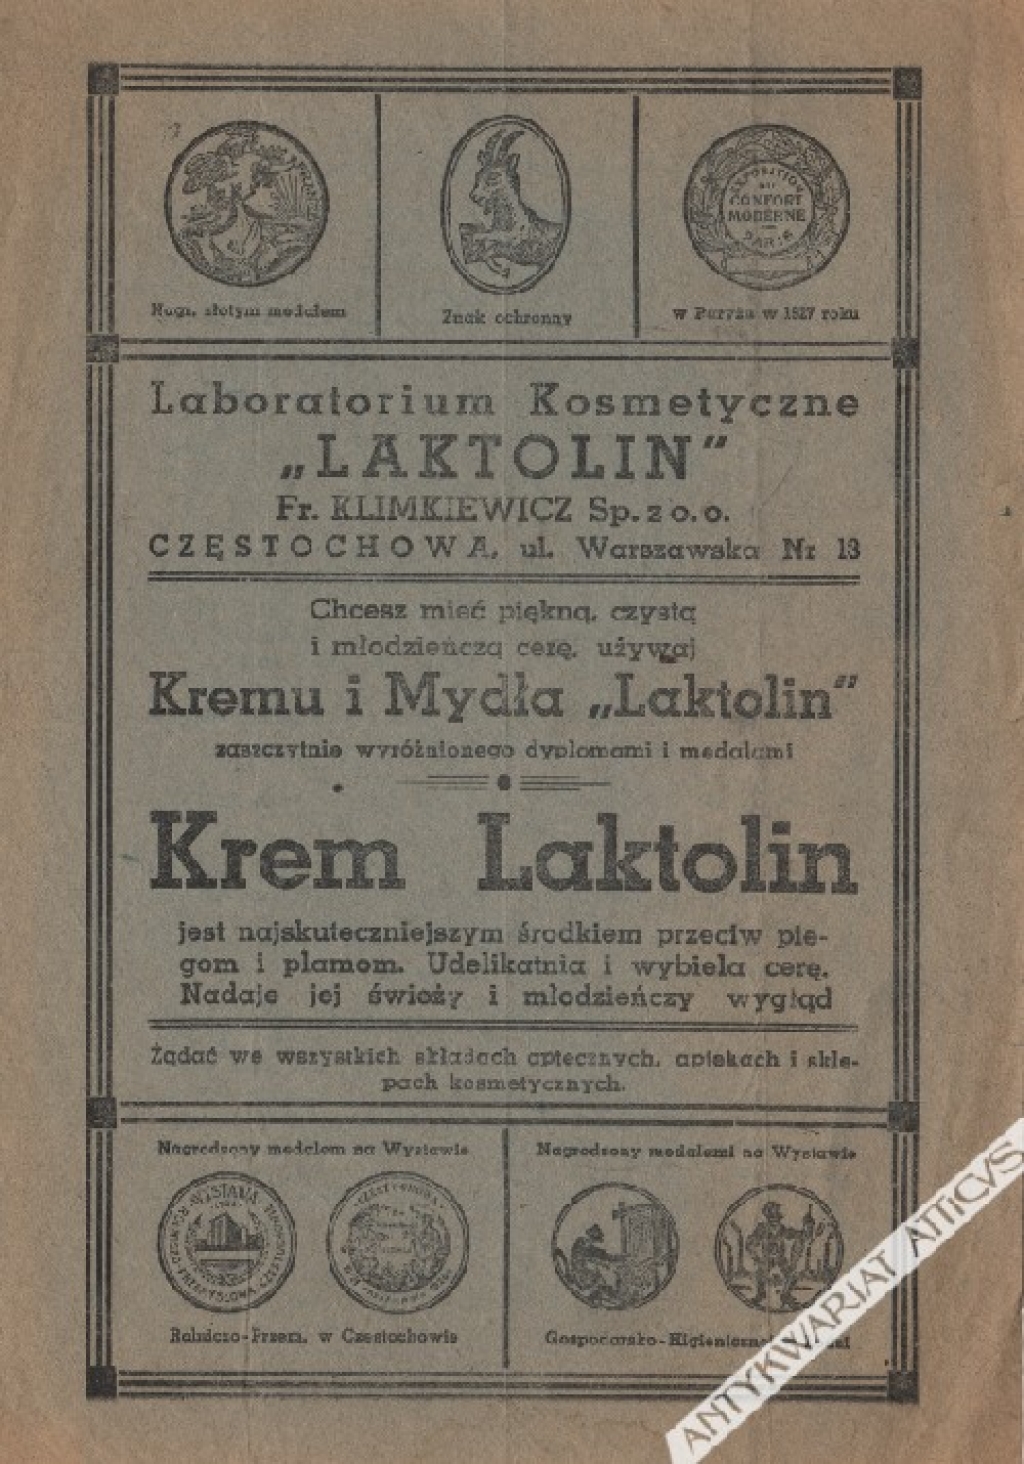 [reklama, 1928 r.] Laboratorium Kosmetyczne "Laktolin", Częstochowa